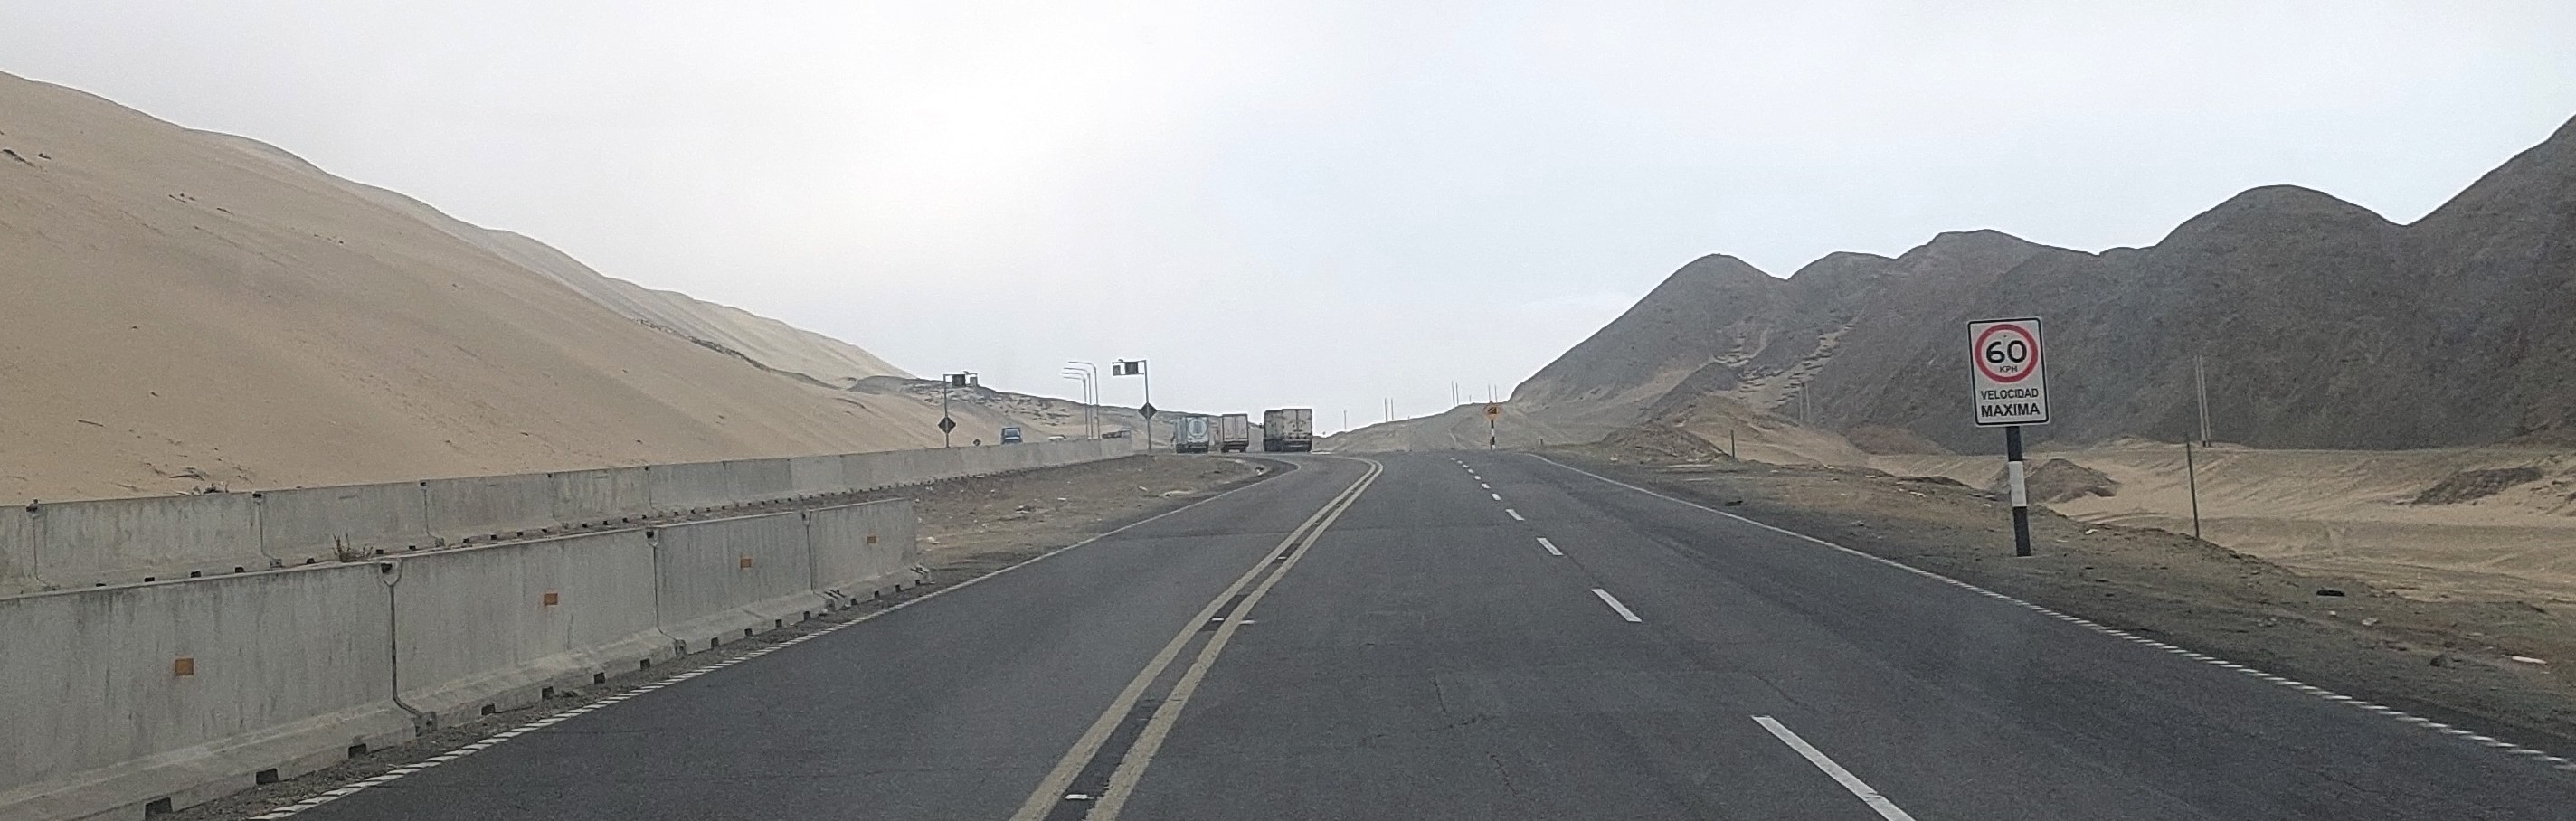 Ruta Nuevo Chimbote - Piura, camiones en carretera del norte de Perú